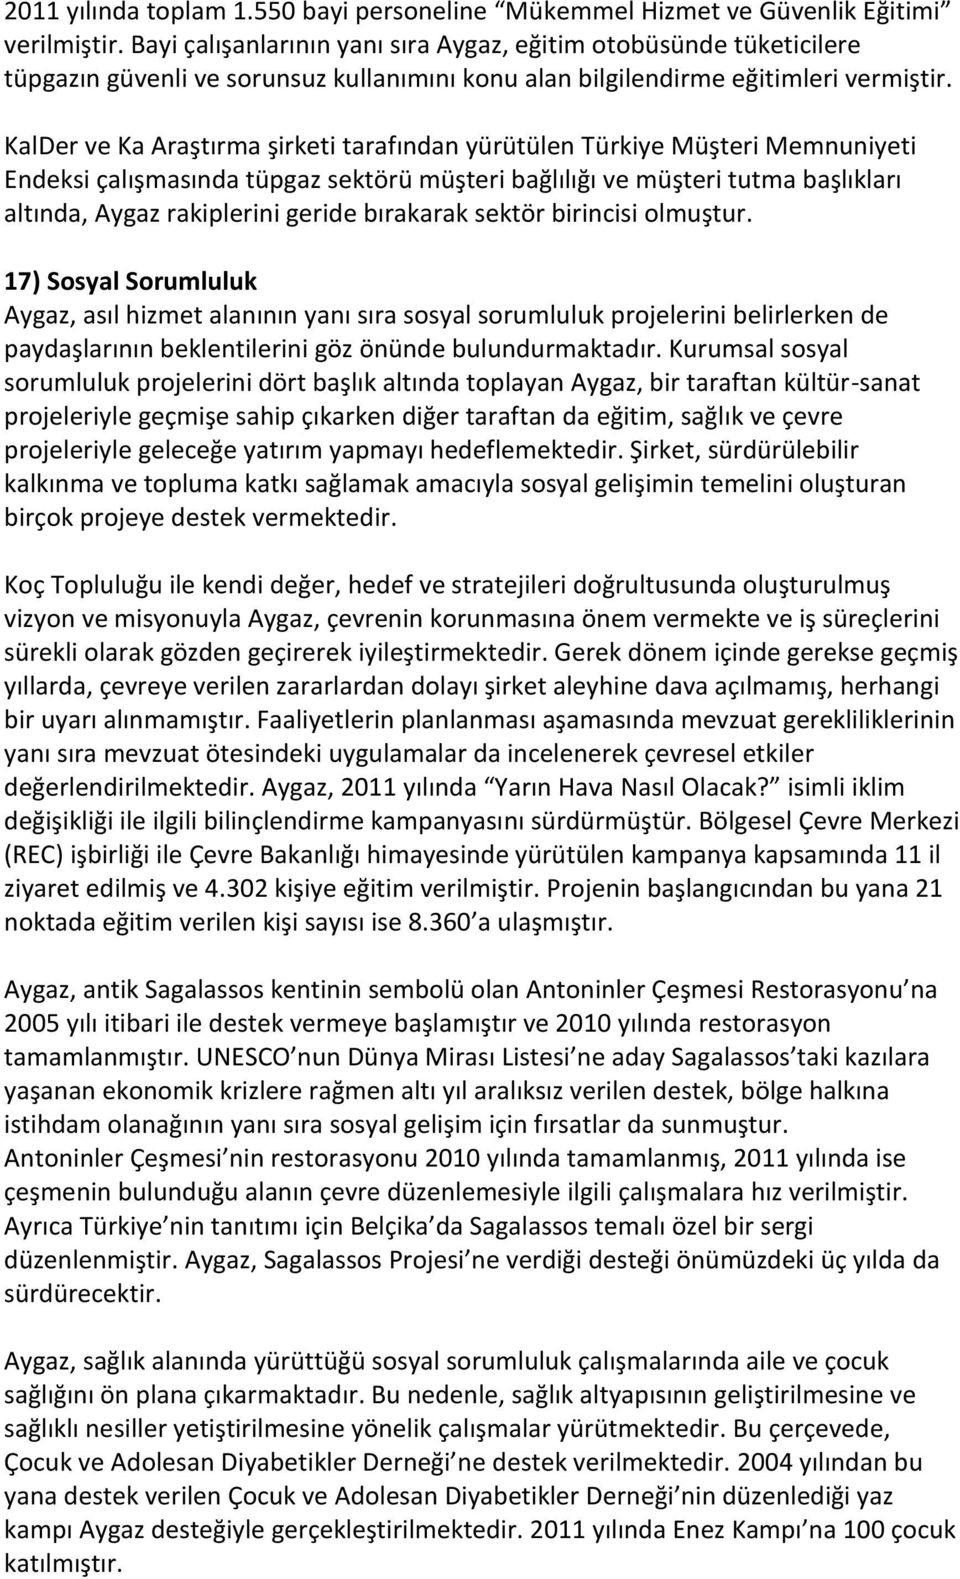 KalDer ve Ka Araştırma şirketi tarafından yürütülen Türkiye Müşteri Memnuniyeti Endeksi çalışmasında tüpgaz sektörü müşteri bağlılığı ve müşteri tutma başlıkları altında, Aygaz rakiplerini geride